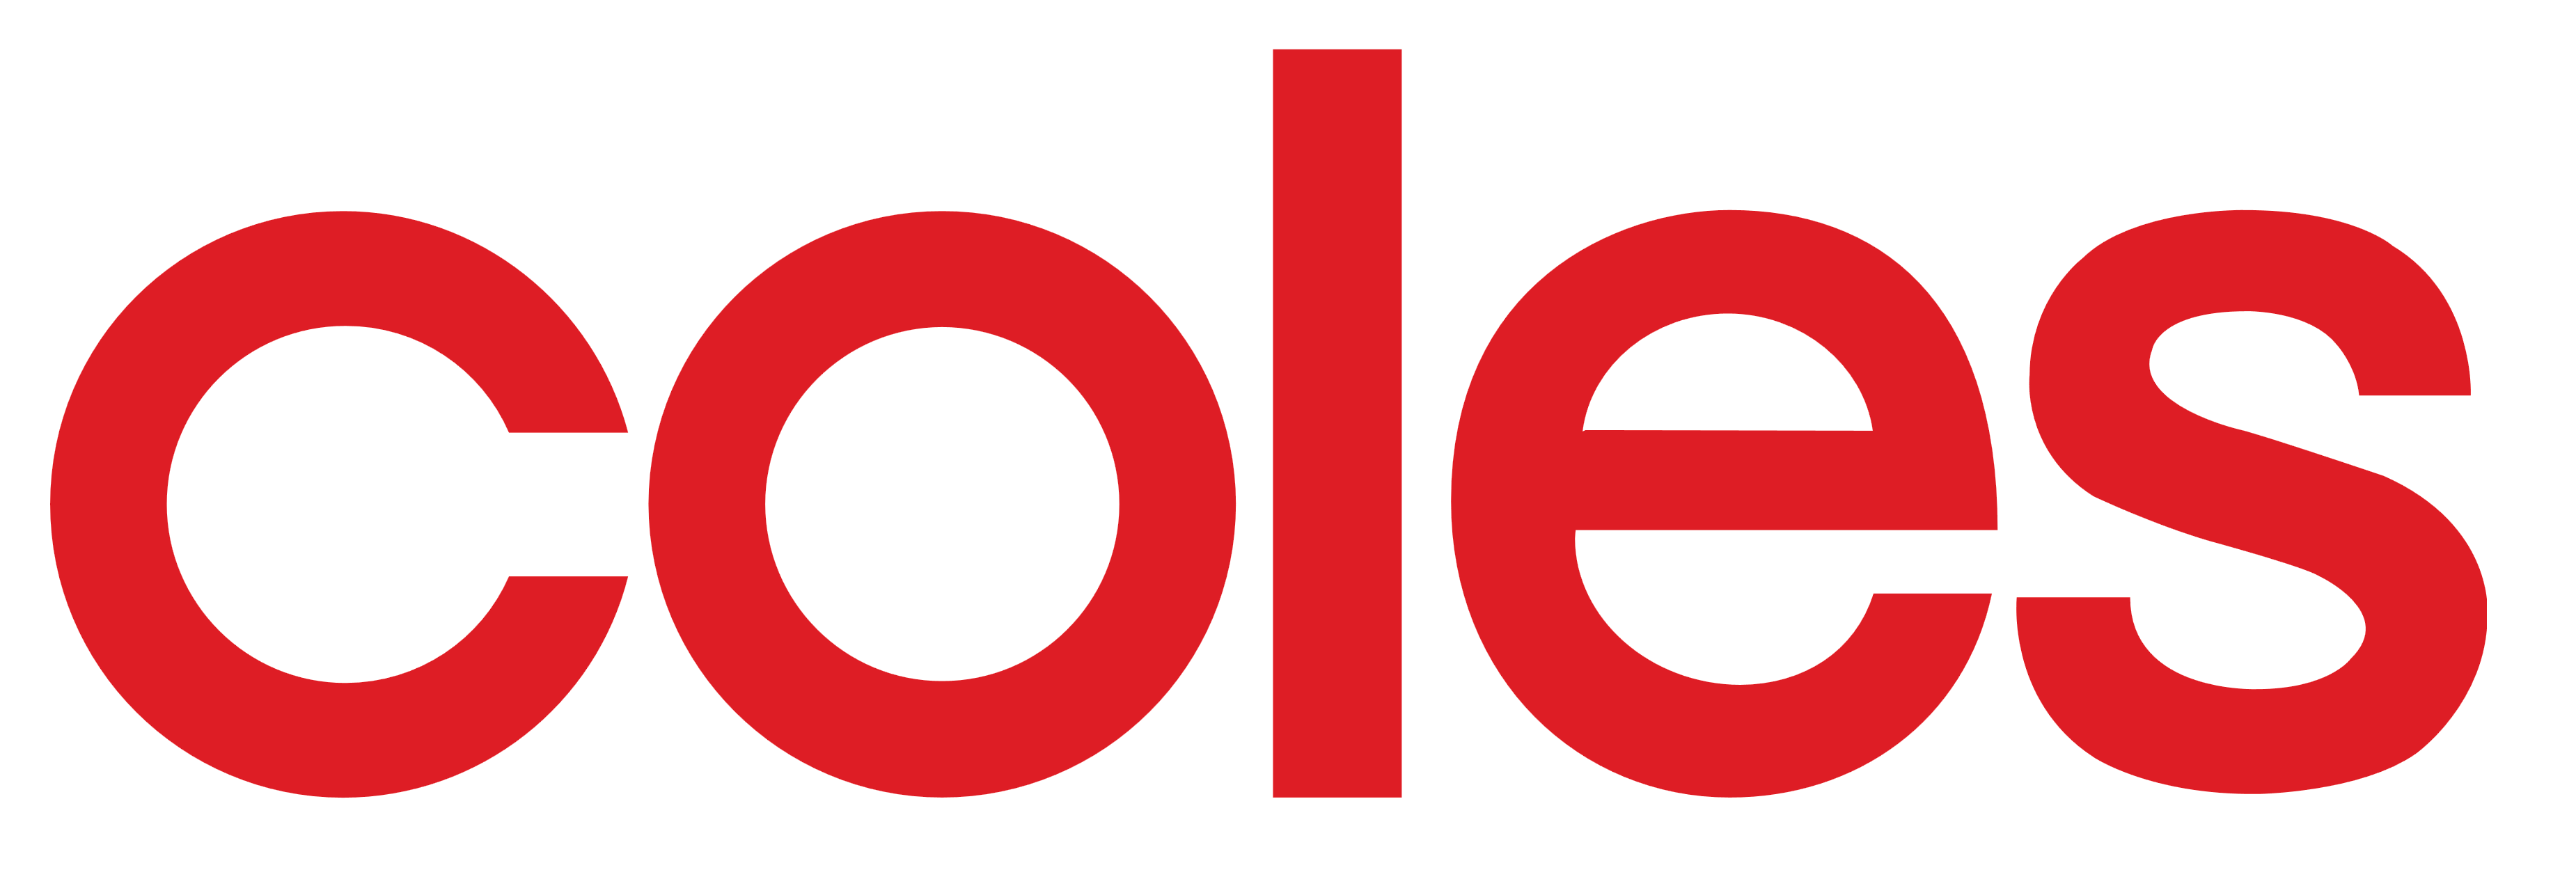 Coles logo, logotype